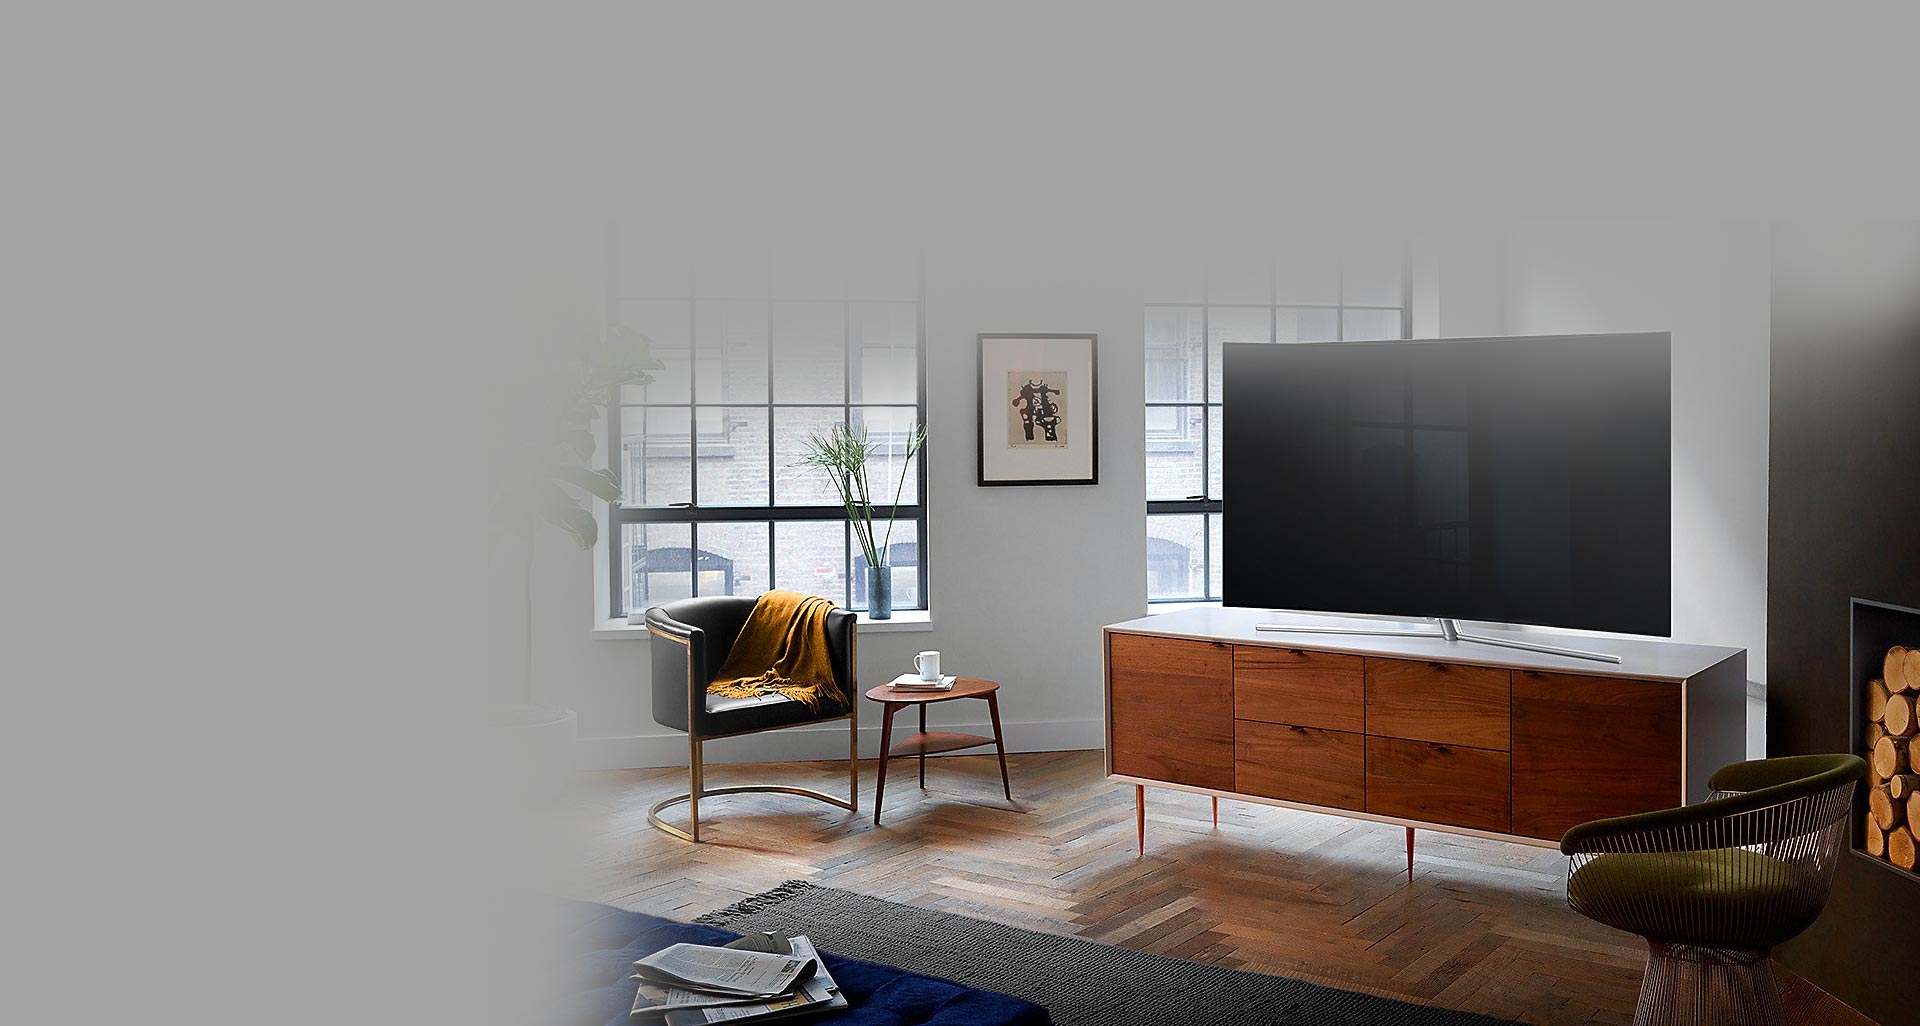 نظم و زیبایی خیره کننده فضای خانه با تلویزیون Q7880